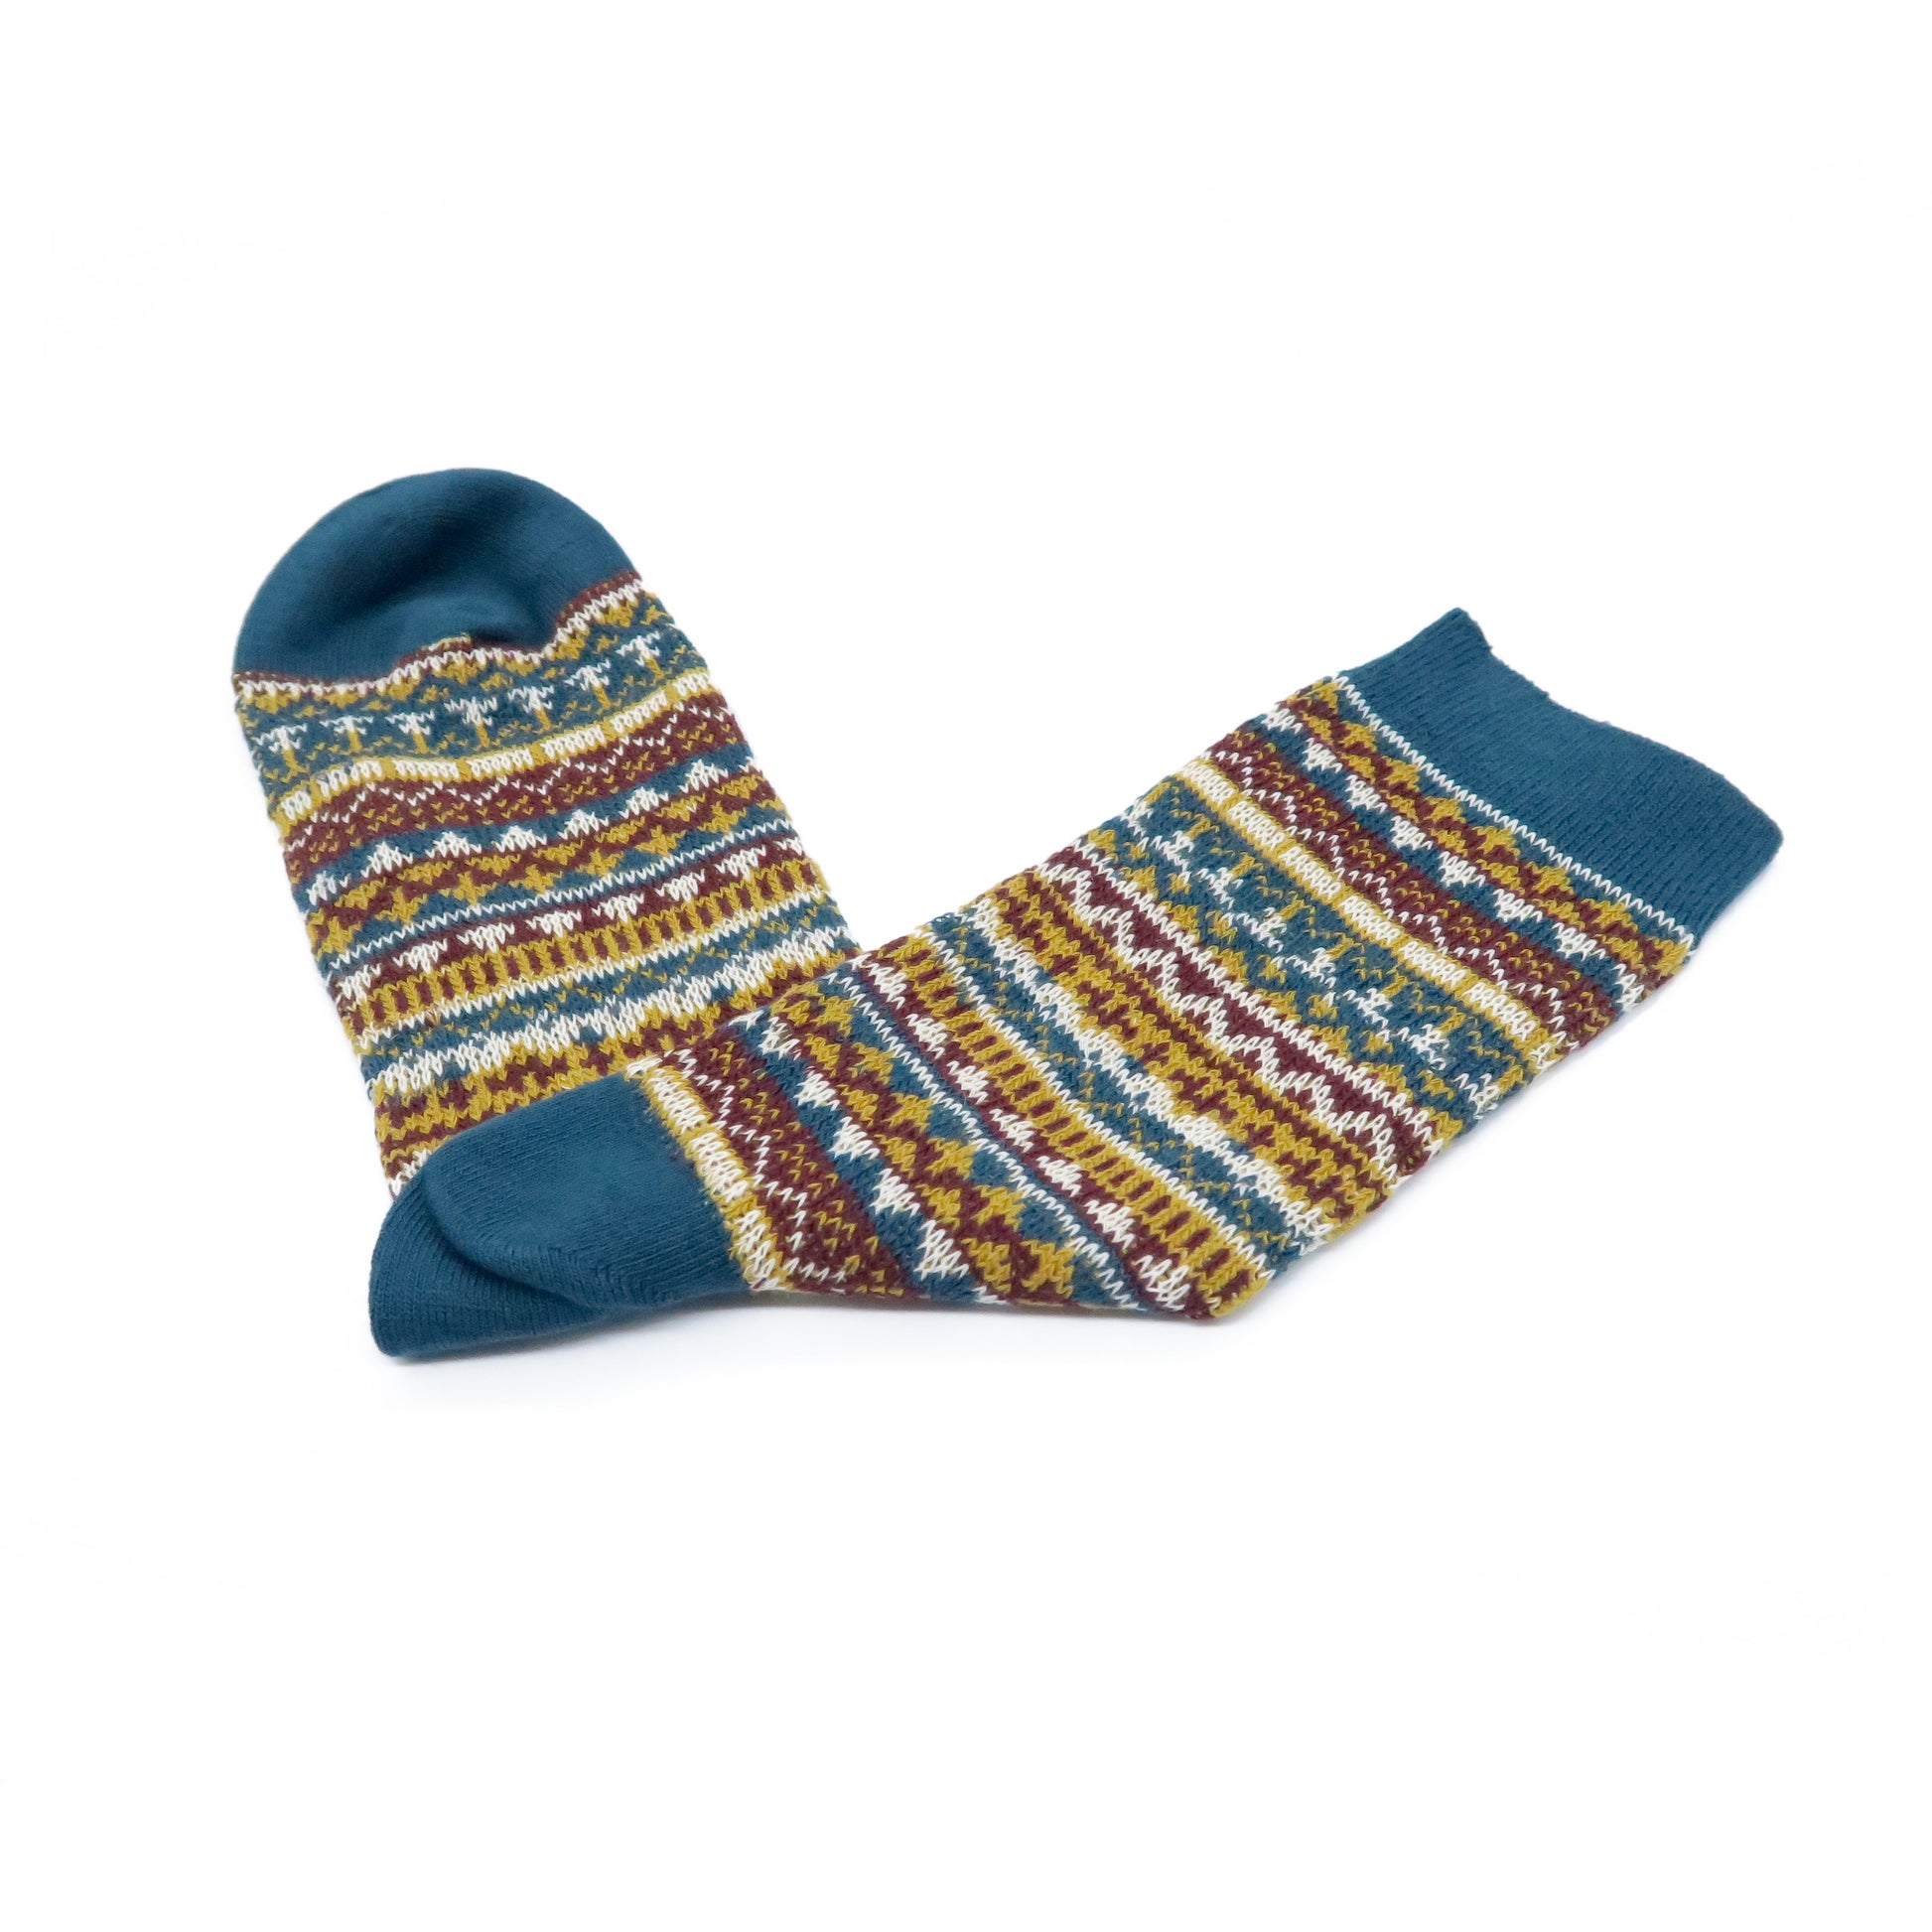 waterford socks - dark green and brown pattern sock